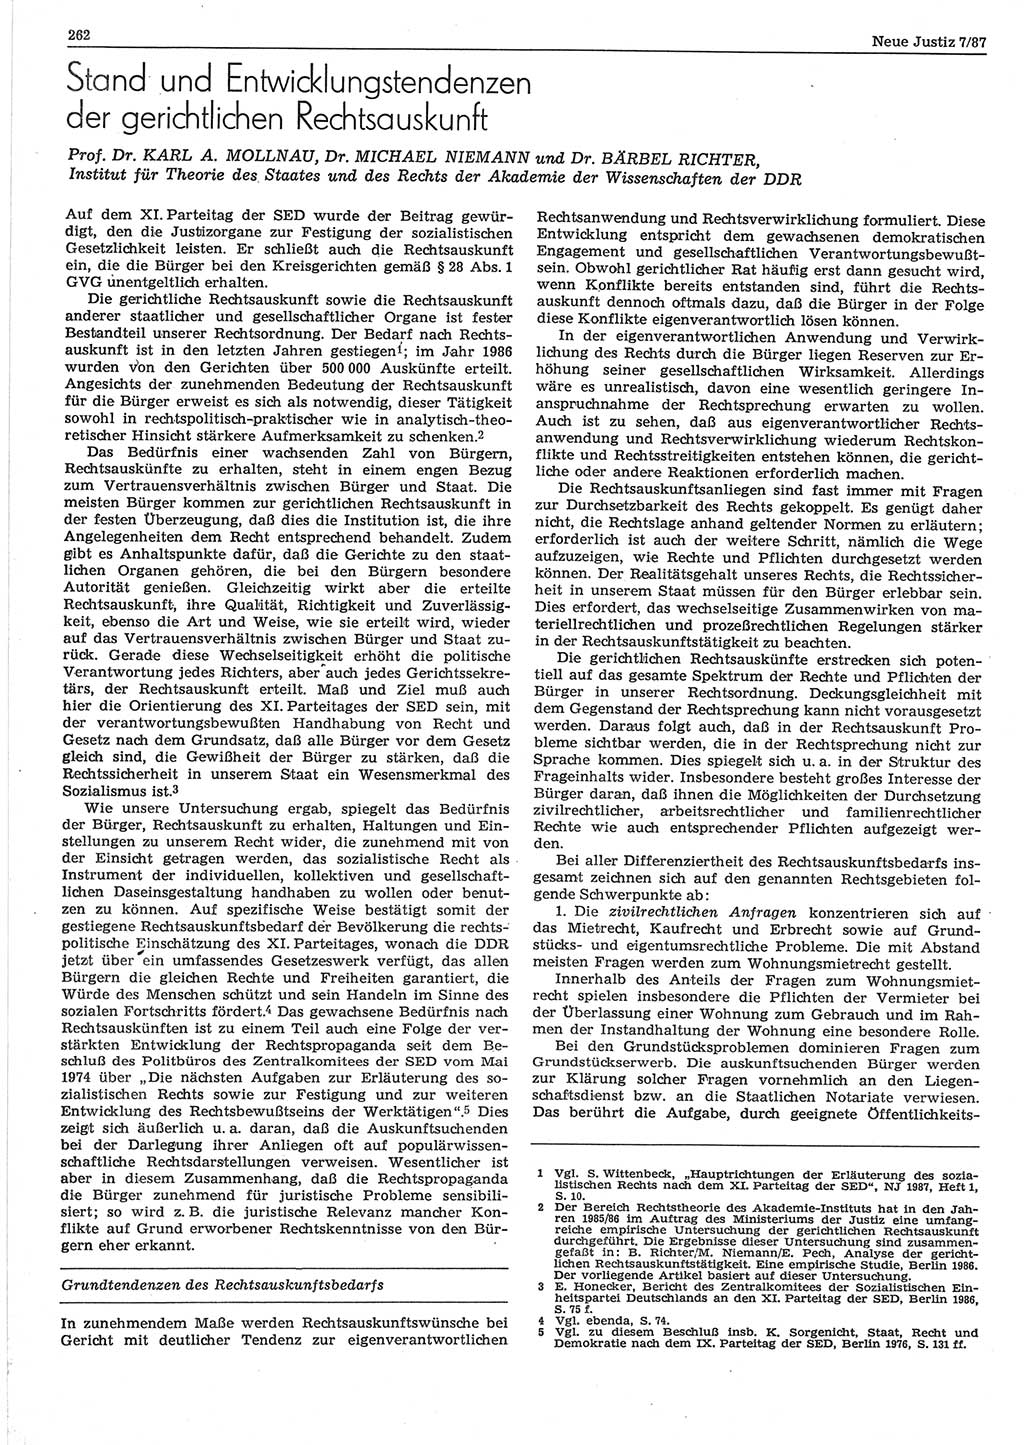 Neue Justiz (NJ), Zeitschrift für sozialistisches Recht und Gesetzlichkeit [Deutsche Demokratische Republik (DDR)], 41. Jahrgang 1987, Seite 262 (NJ DDR 1987, S. 262)